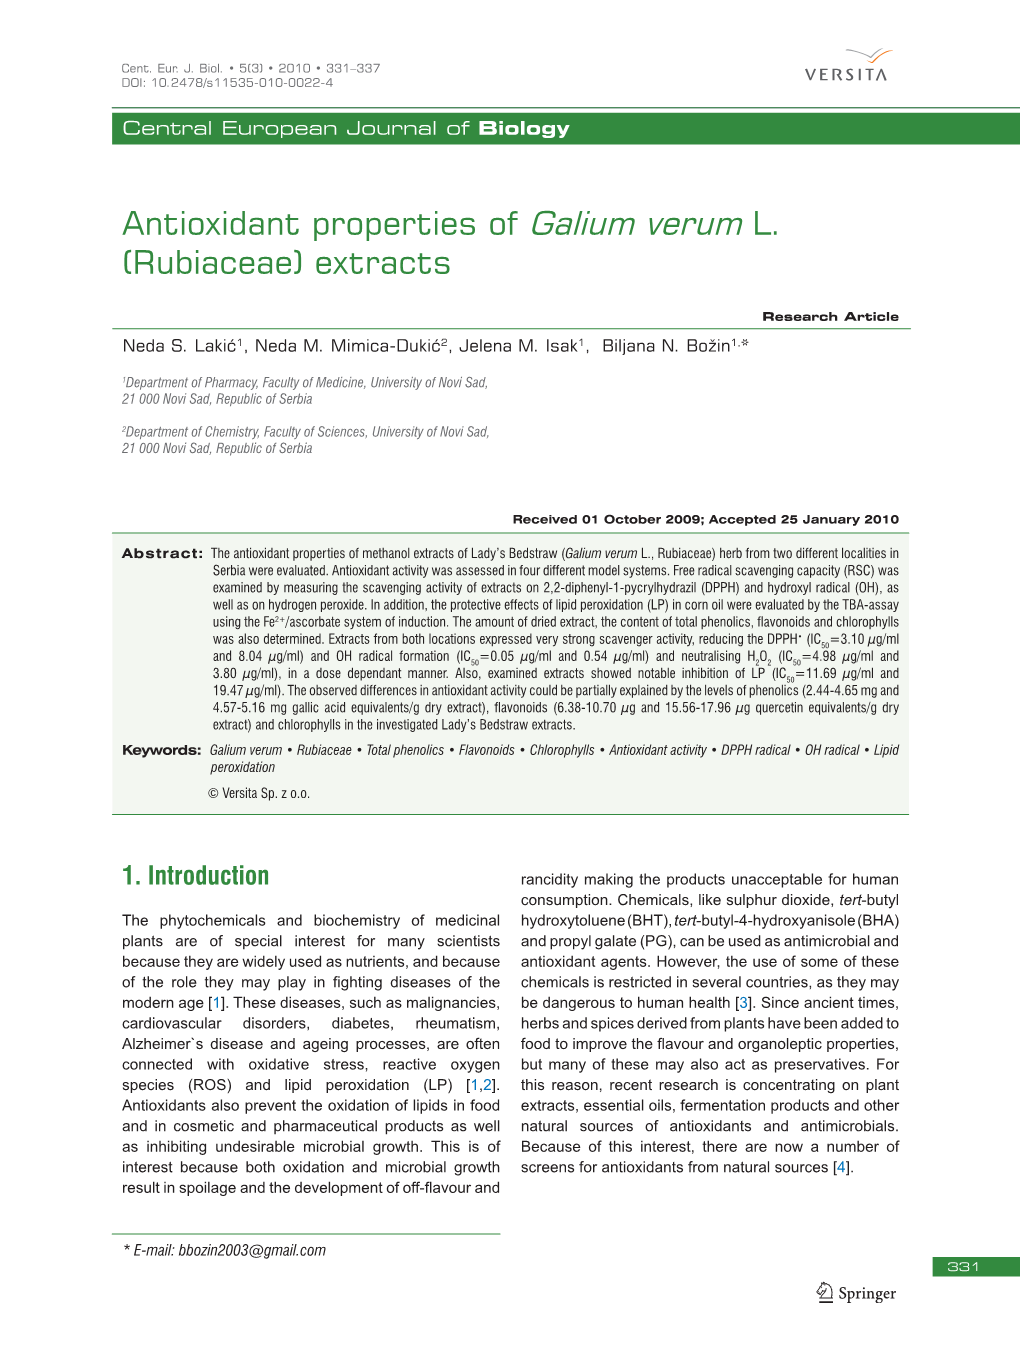 Antioxidant Properties of Galium Verum L. (Rubiaceae) Extracts